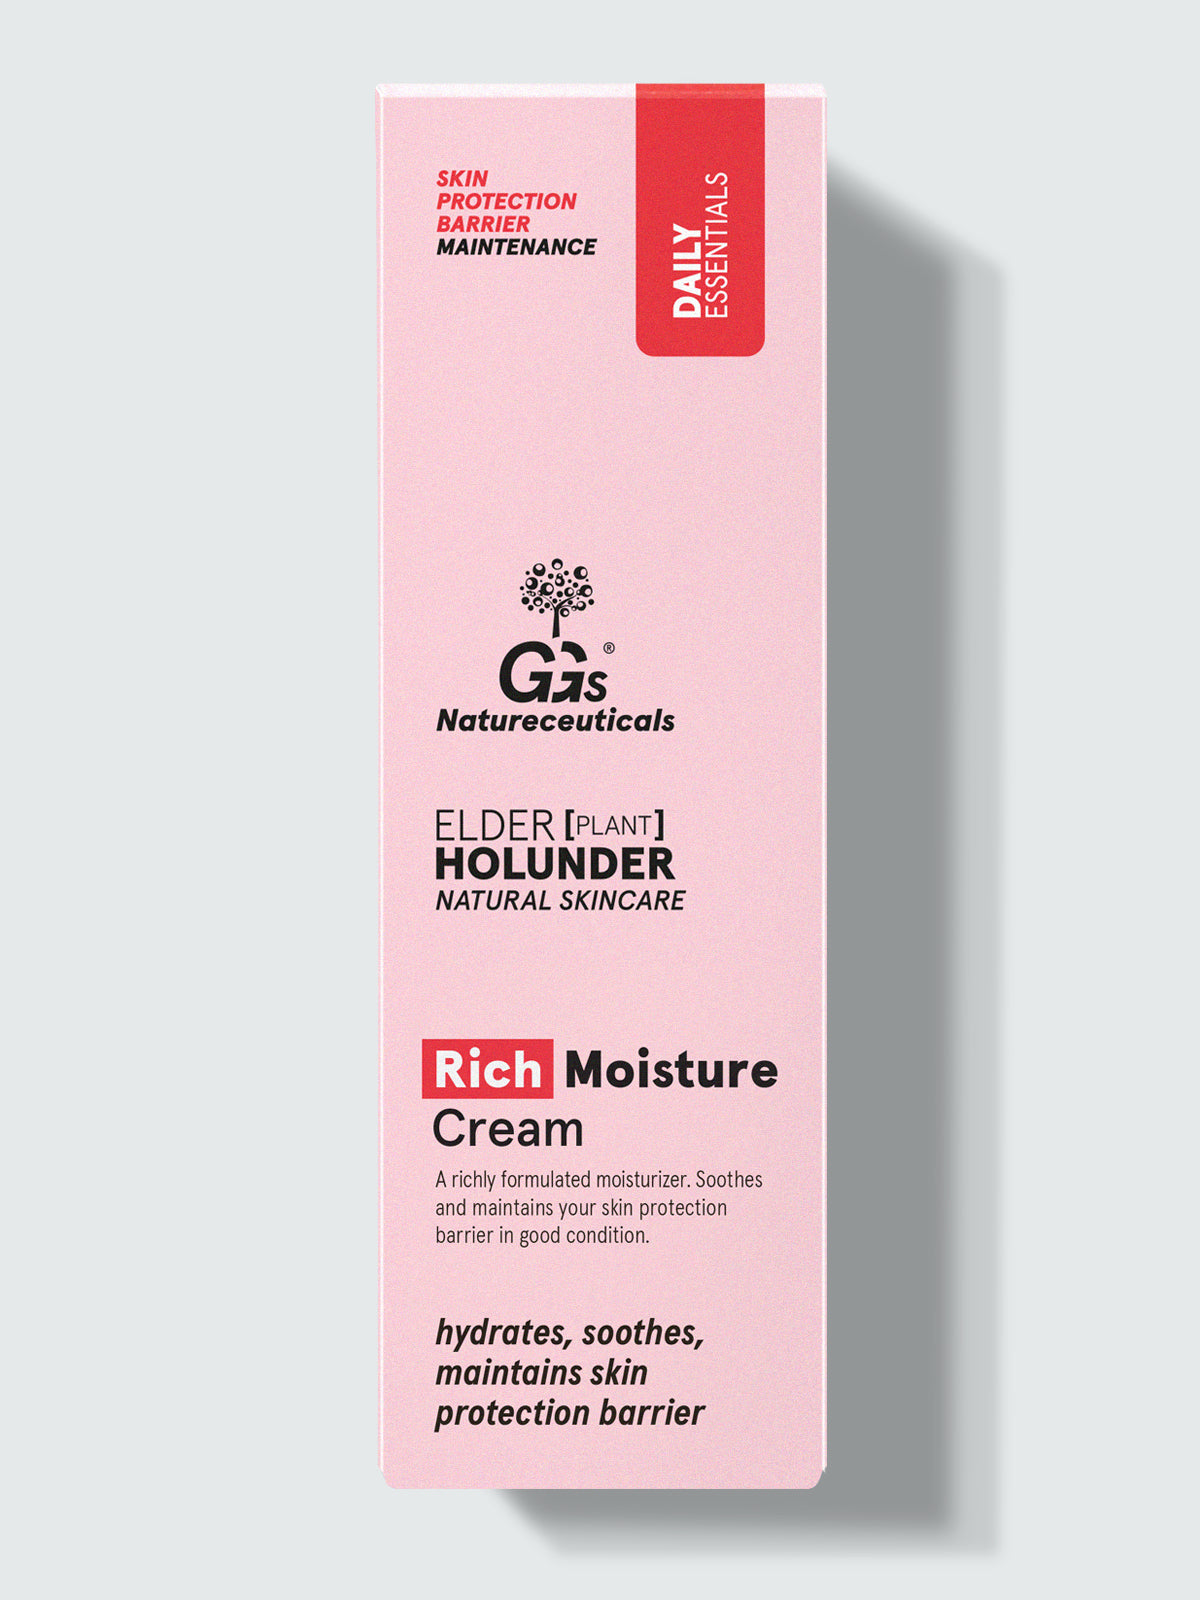 Rich Moisture Cream – Reichhaltige Feuchtigkeitscreme für trockene Haut | GGs Natureceuticals